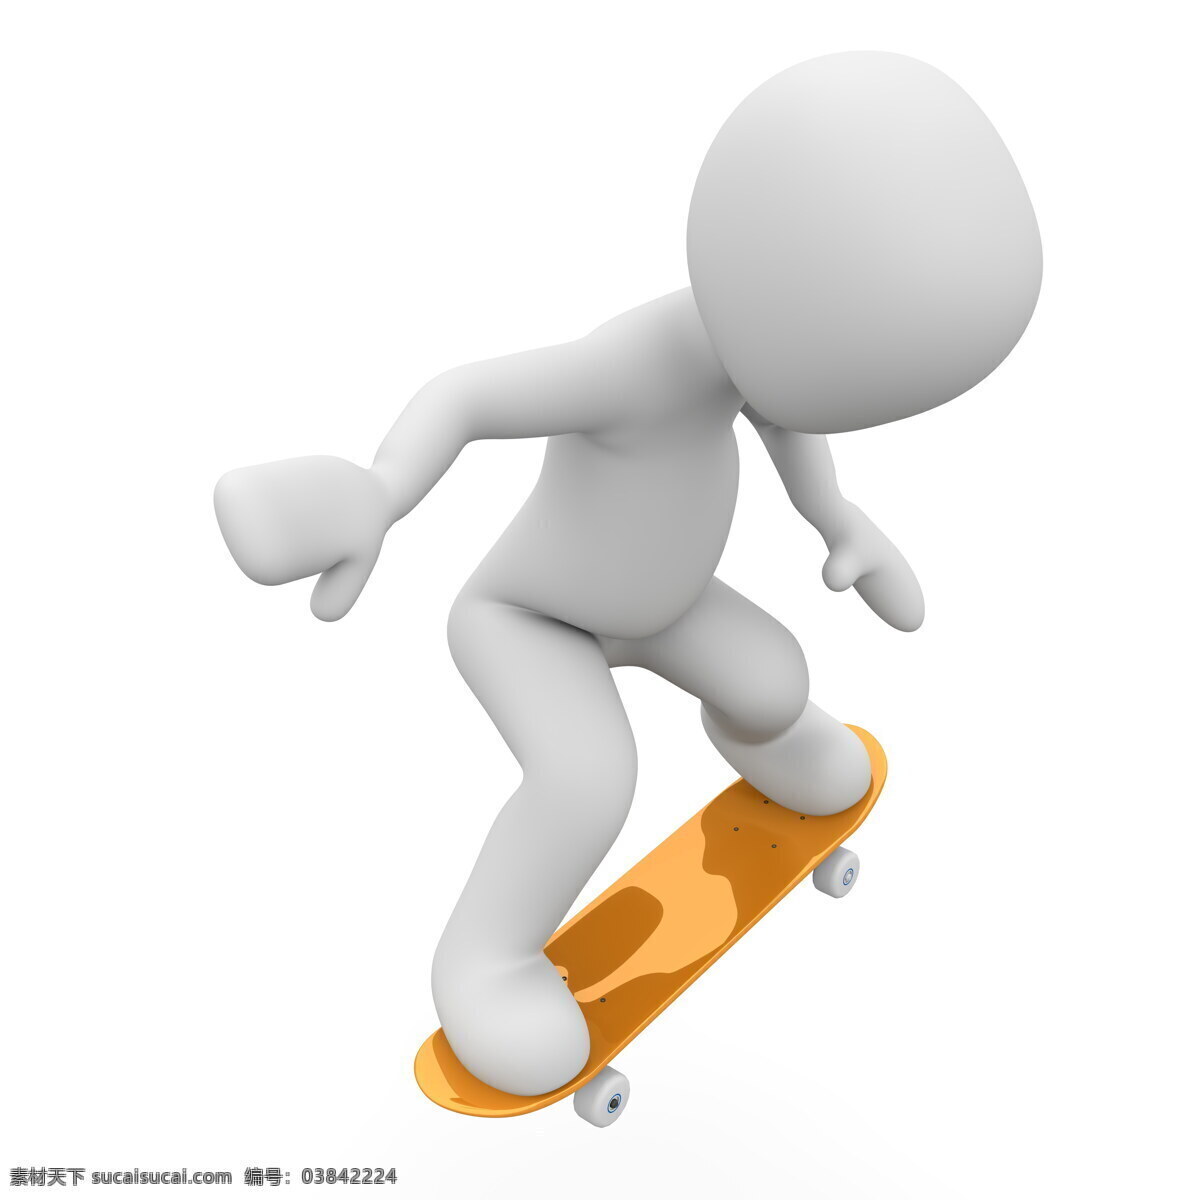 创意 3d 小人 滑滑 板 3d小人 滑滑板 白色小人 滑板